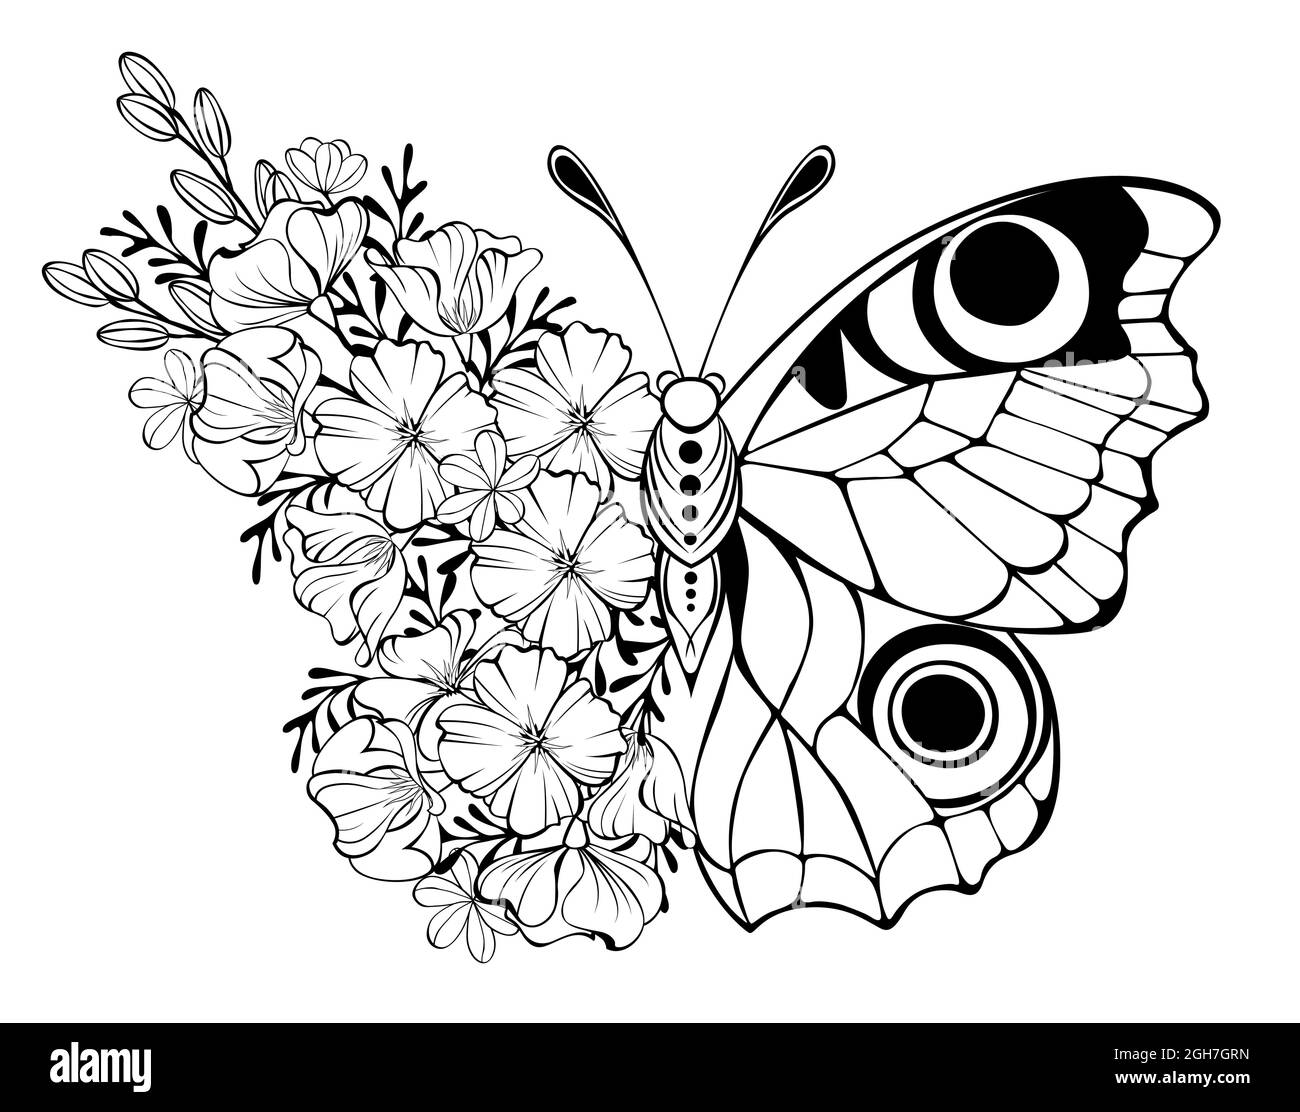 Contorno flor mariposa, ojo de pavo real con ala decorada con contorno de amapola de California y plantas silvestres sobre fondo blanco. Ilustración del Vector